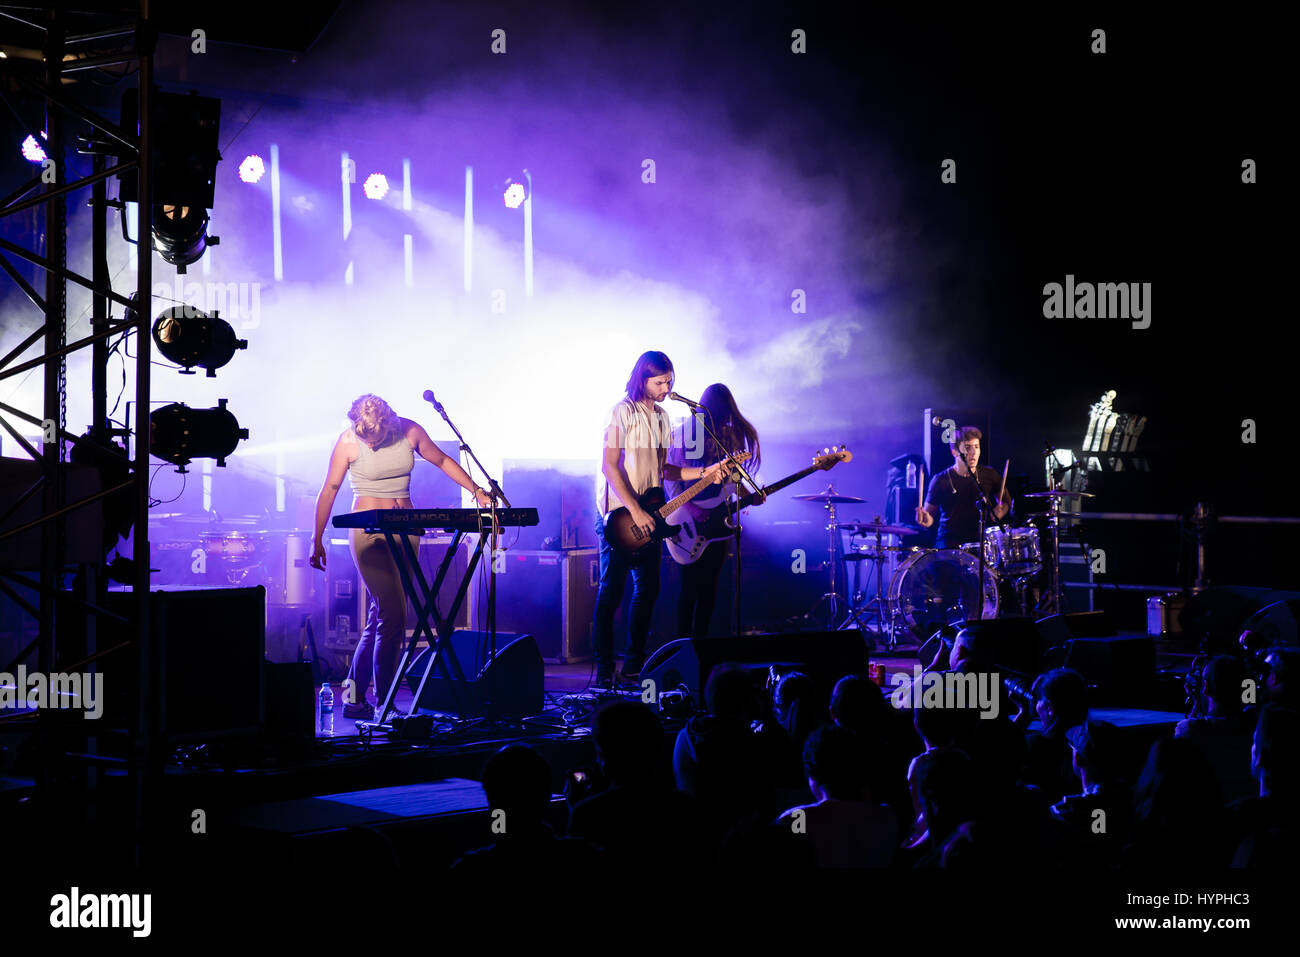 Barcellona - 5 set: Belako (banda) in concerto presso il Tibidabo Live Festival il 5 settembre 2015 a Barcellona, Spagna. Foto Stock